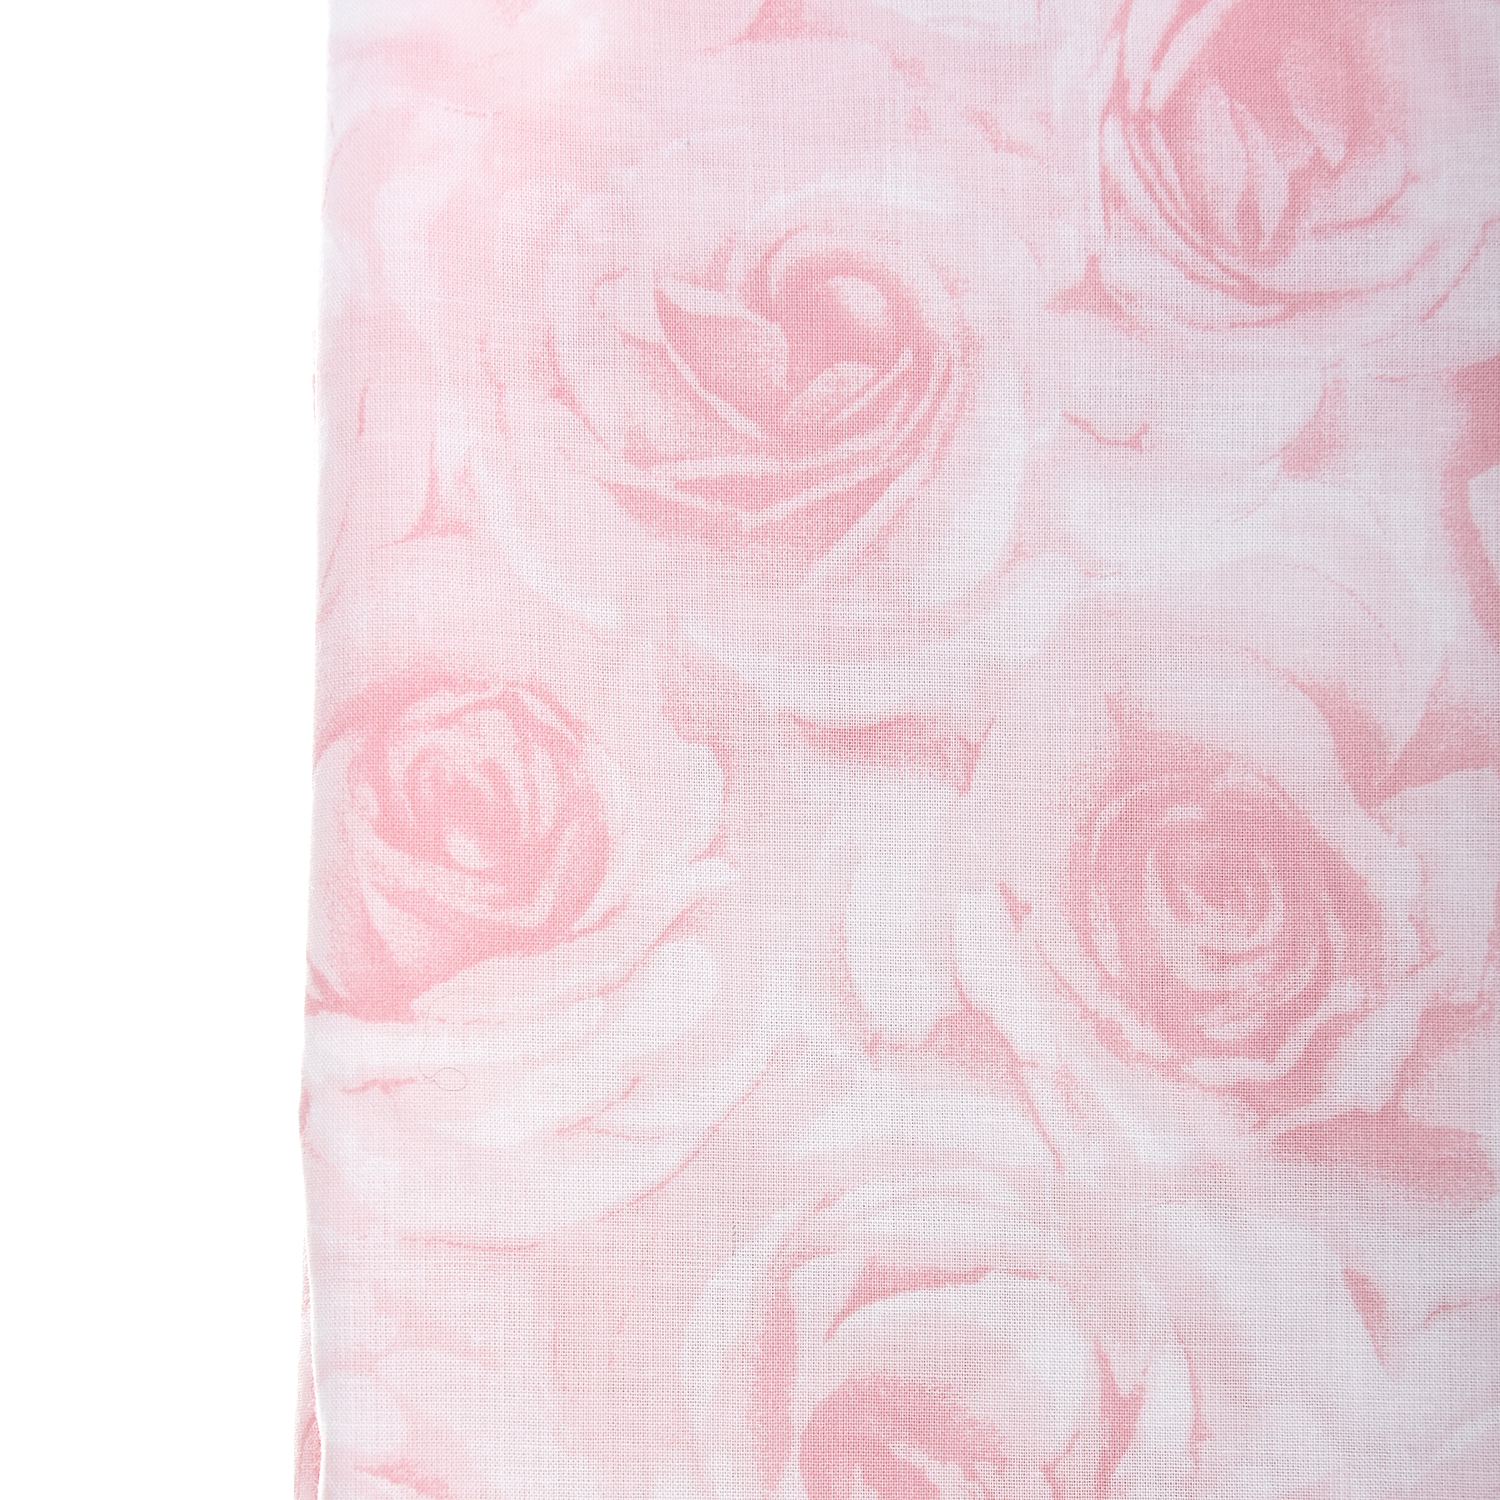 Шарф с принтом "Розы" Joli Bebe детский, размер unica, цвет розовый - фото 3